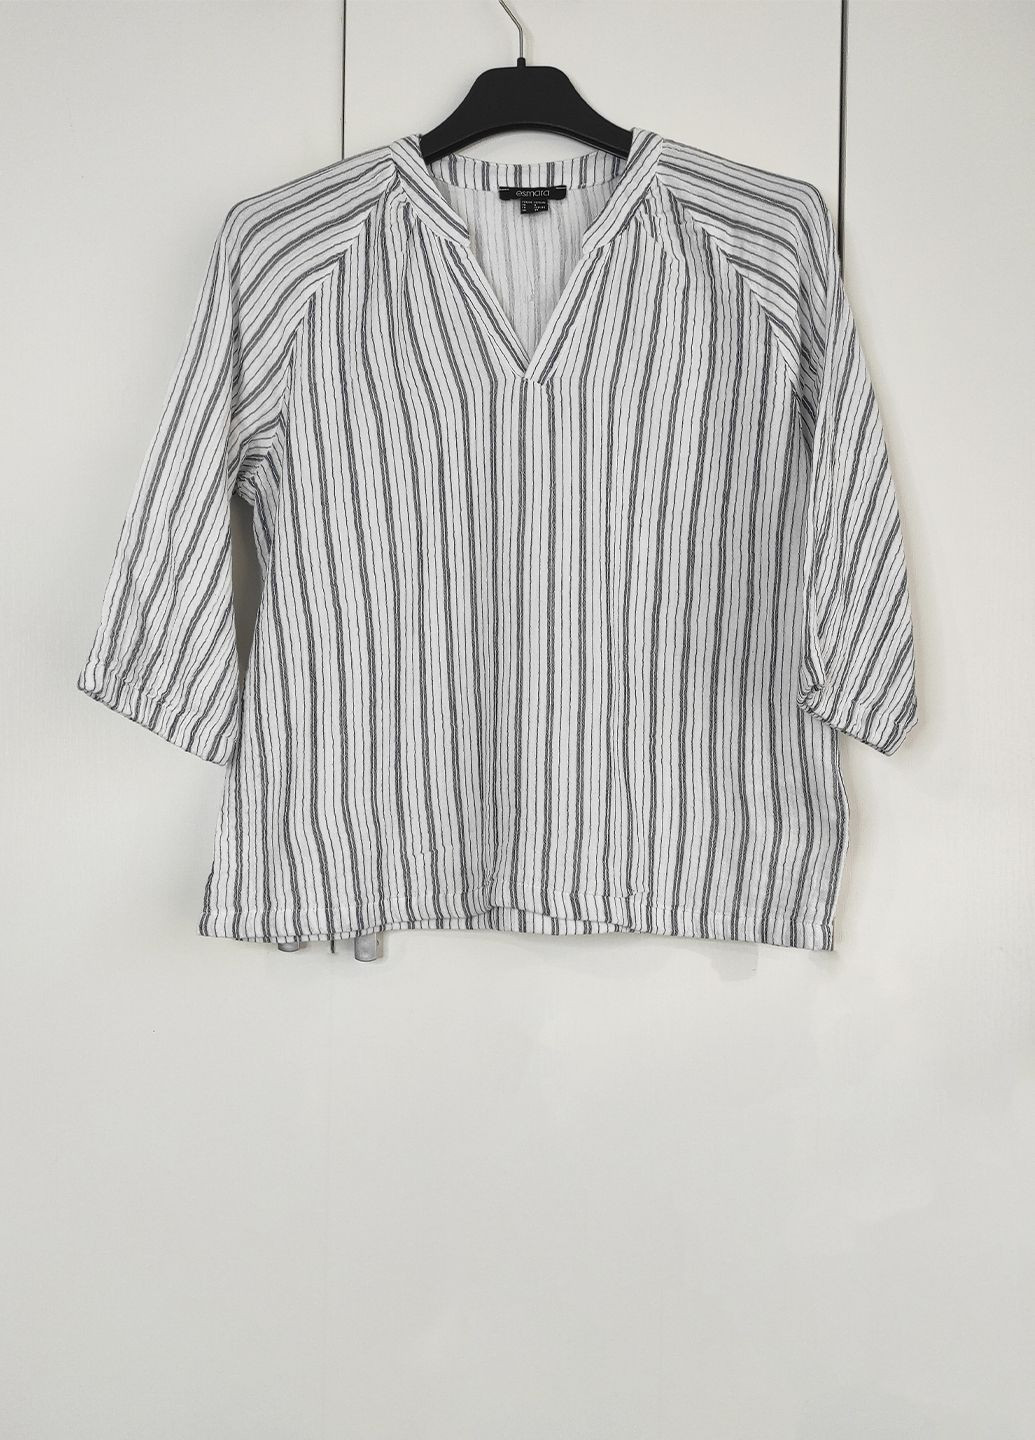 Комбинированная летняя блуза из муслина в полоску рукав 3/4 Esmara